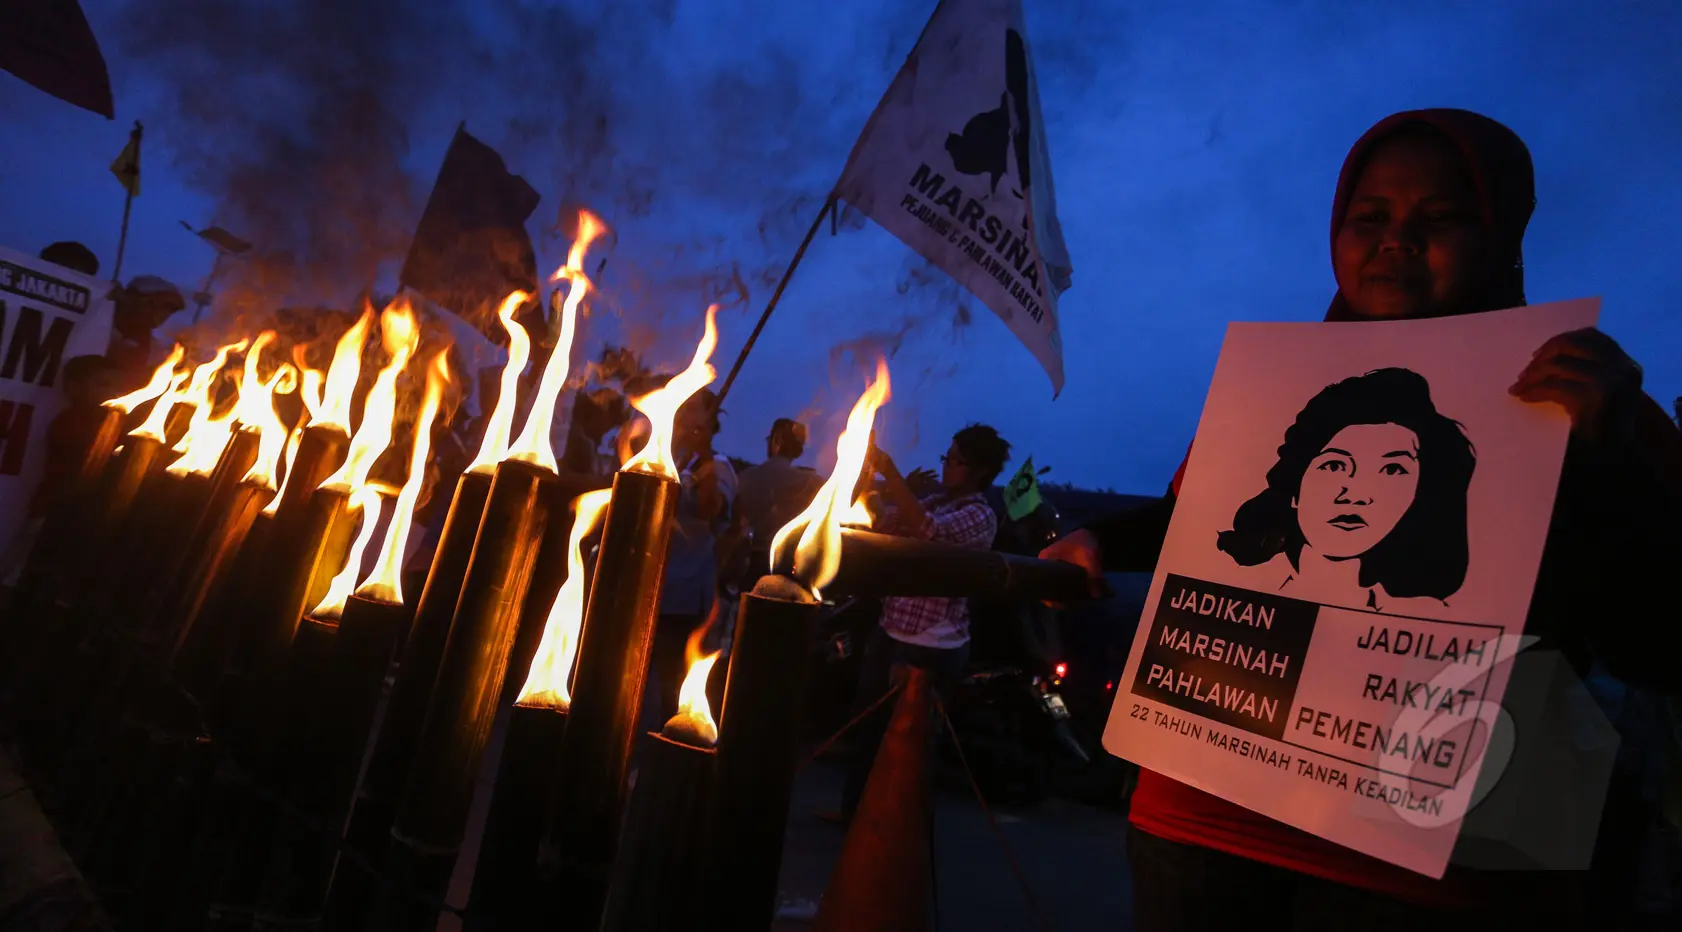 Puluhan buruh wanita saat menggelar aksi memperingati 22 tahun tanpa keadilan "Malam Marah Marsinah”, Jakarta, Jumat (8/5/2015). Mereka menuntut pemerintah untuk mengusut pelanggaran HAM terhadap Marsinah(/Faizal Fanani)